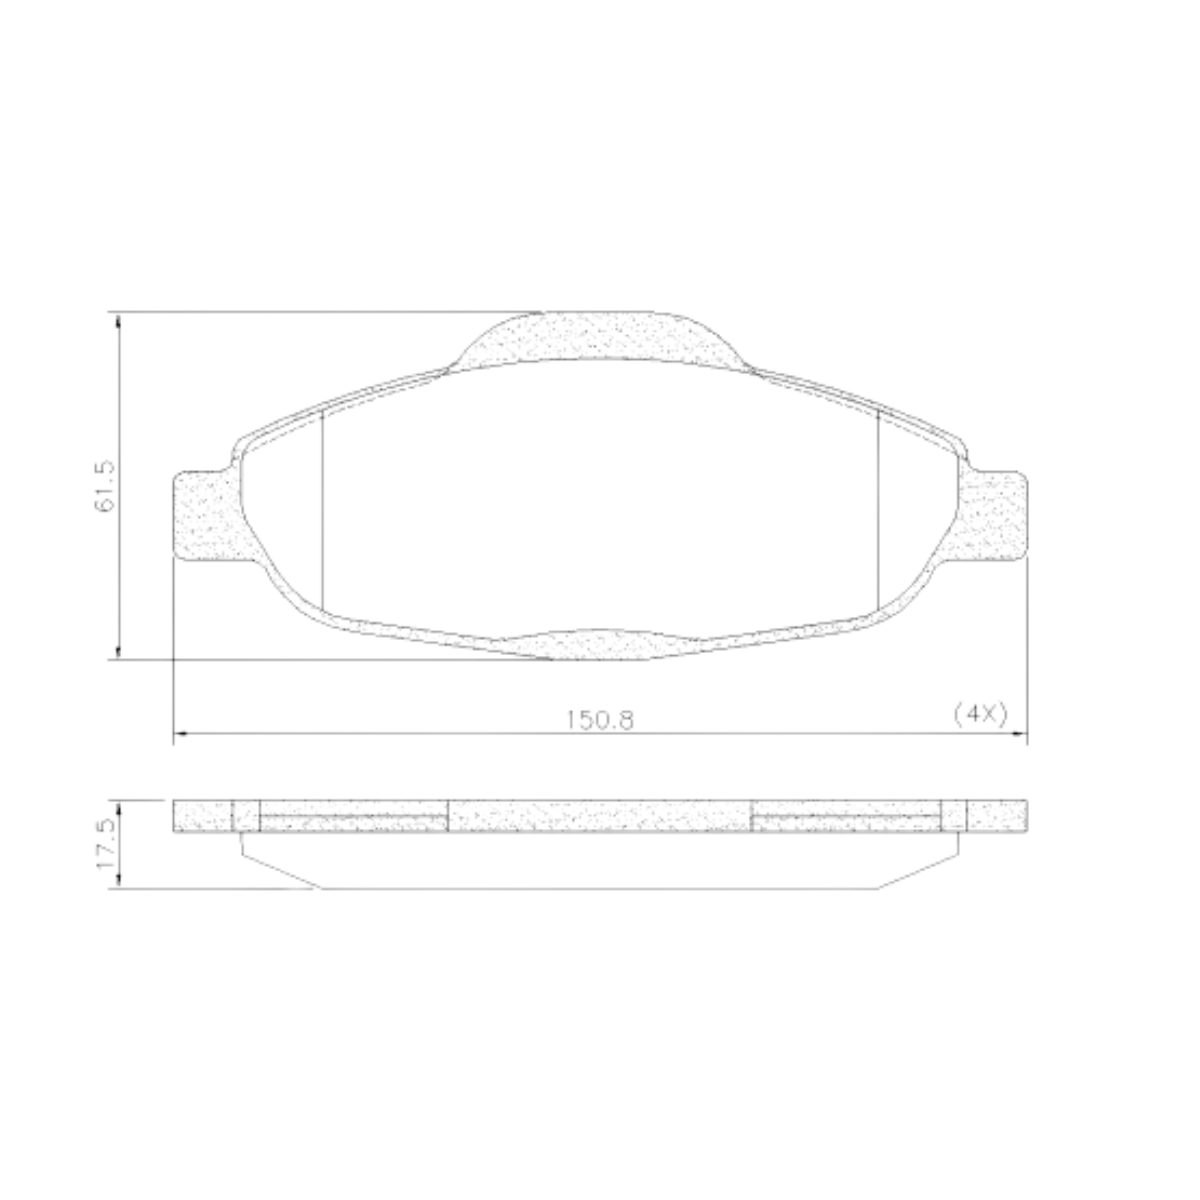 Pastilha Freio Peugeot 308 1.6 16v Quiksilver 2014 Ate 2015 Dianteira Sistema Bosch, Ceramica Fras-le Pd-1470-cmaxx